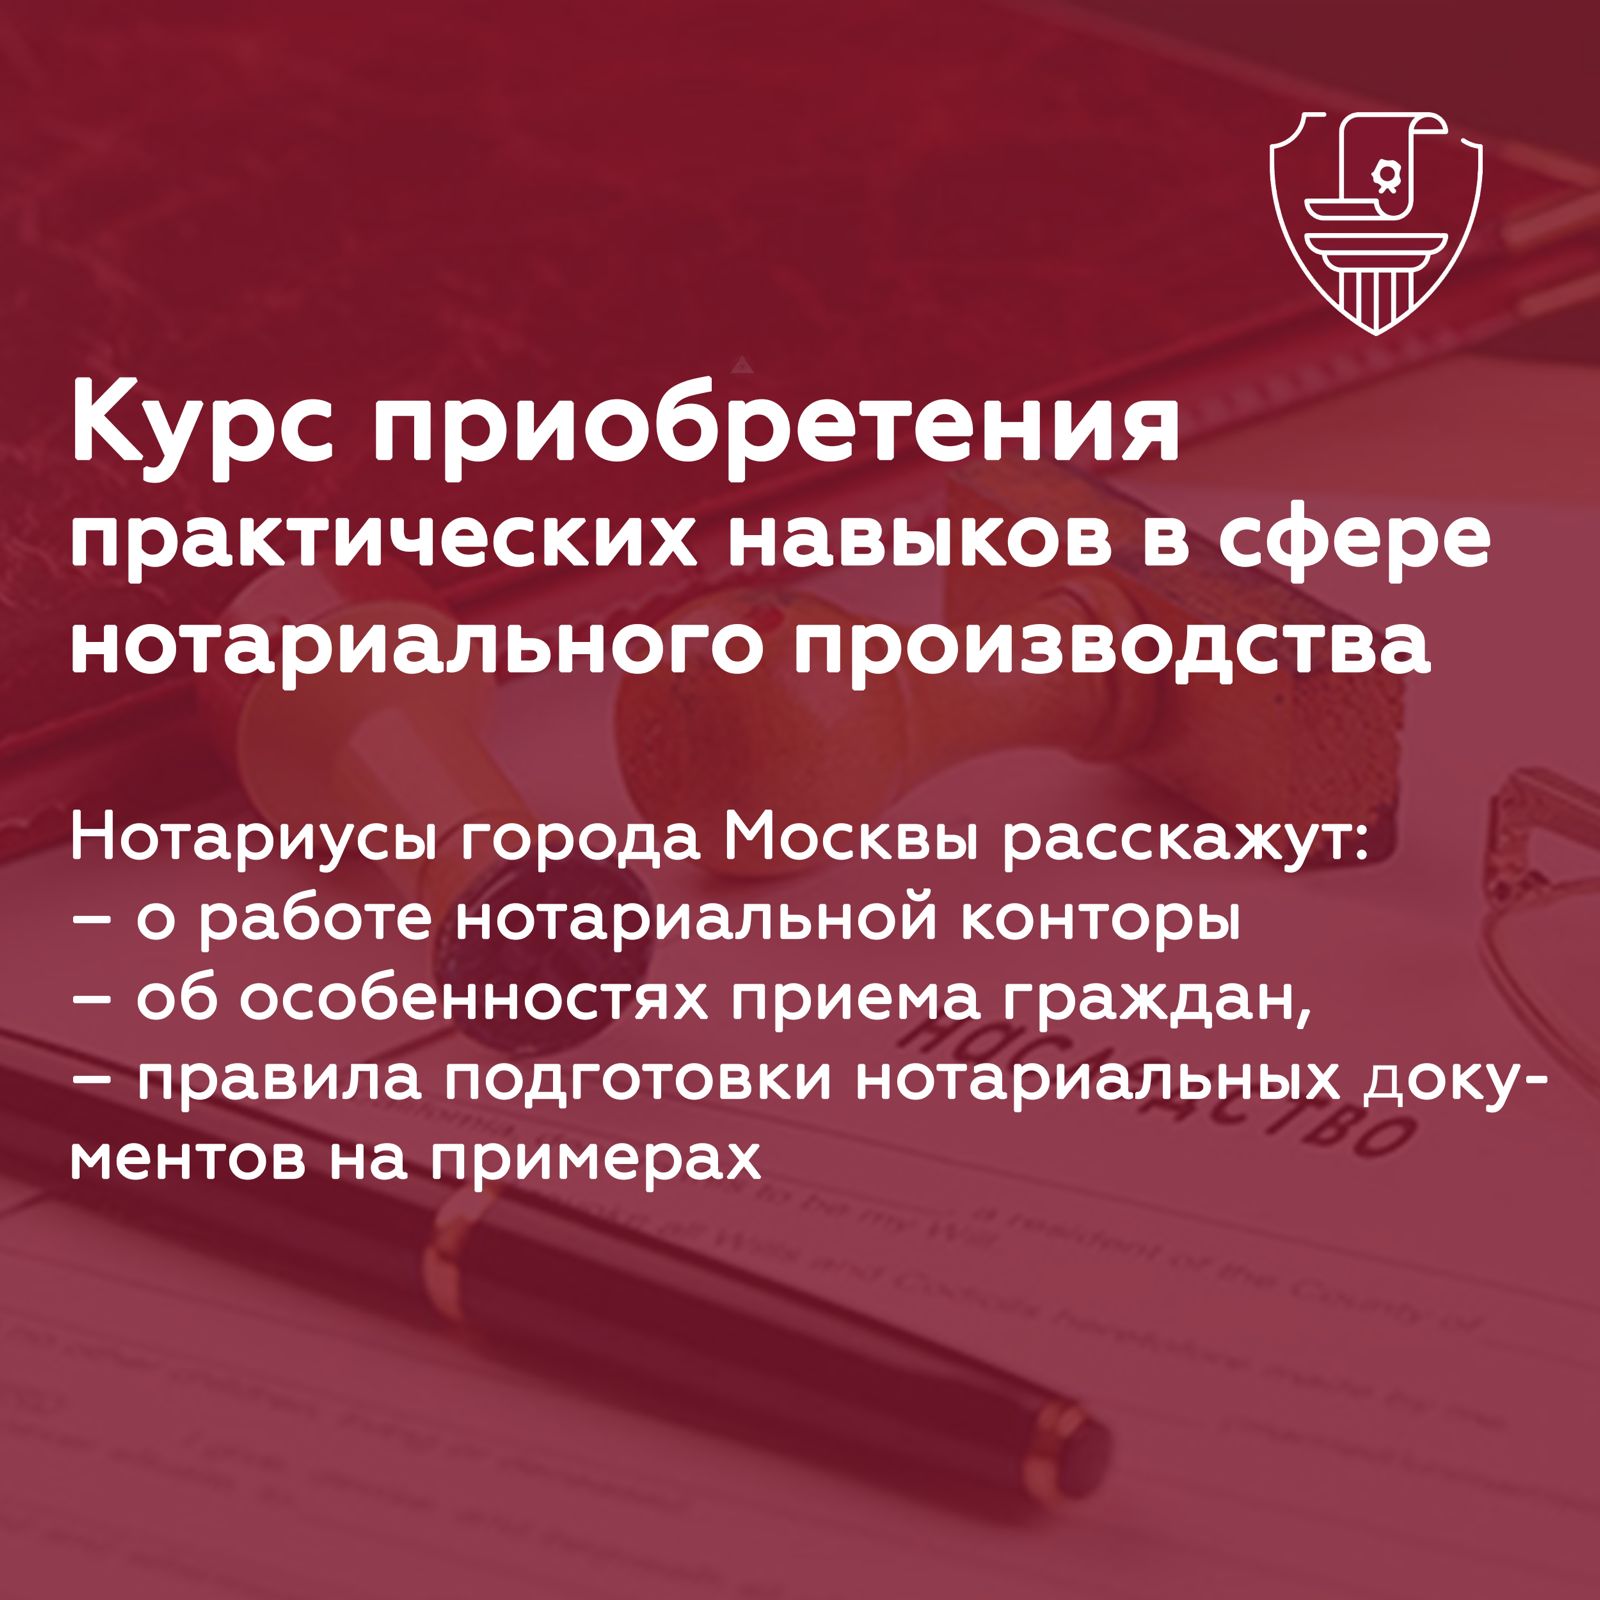 Московская городская нотариальная палата объявляет о наборе на курс профессиональной подготовки в сфере нотариального производства. 